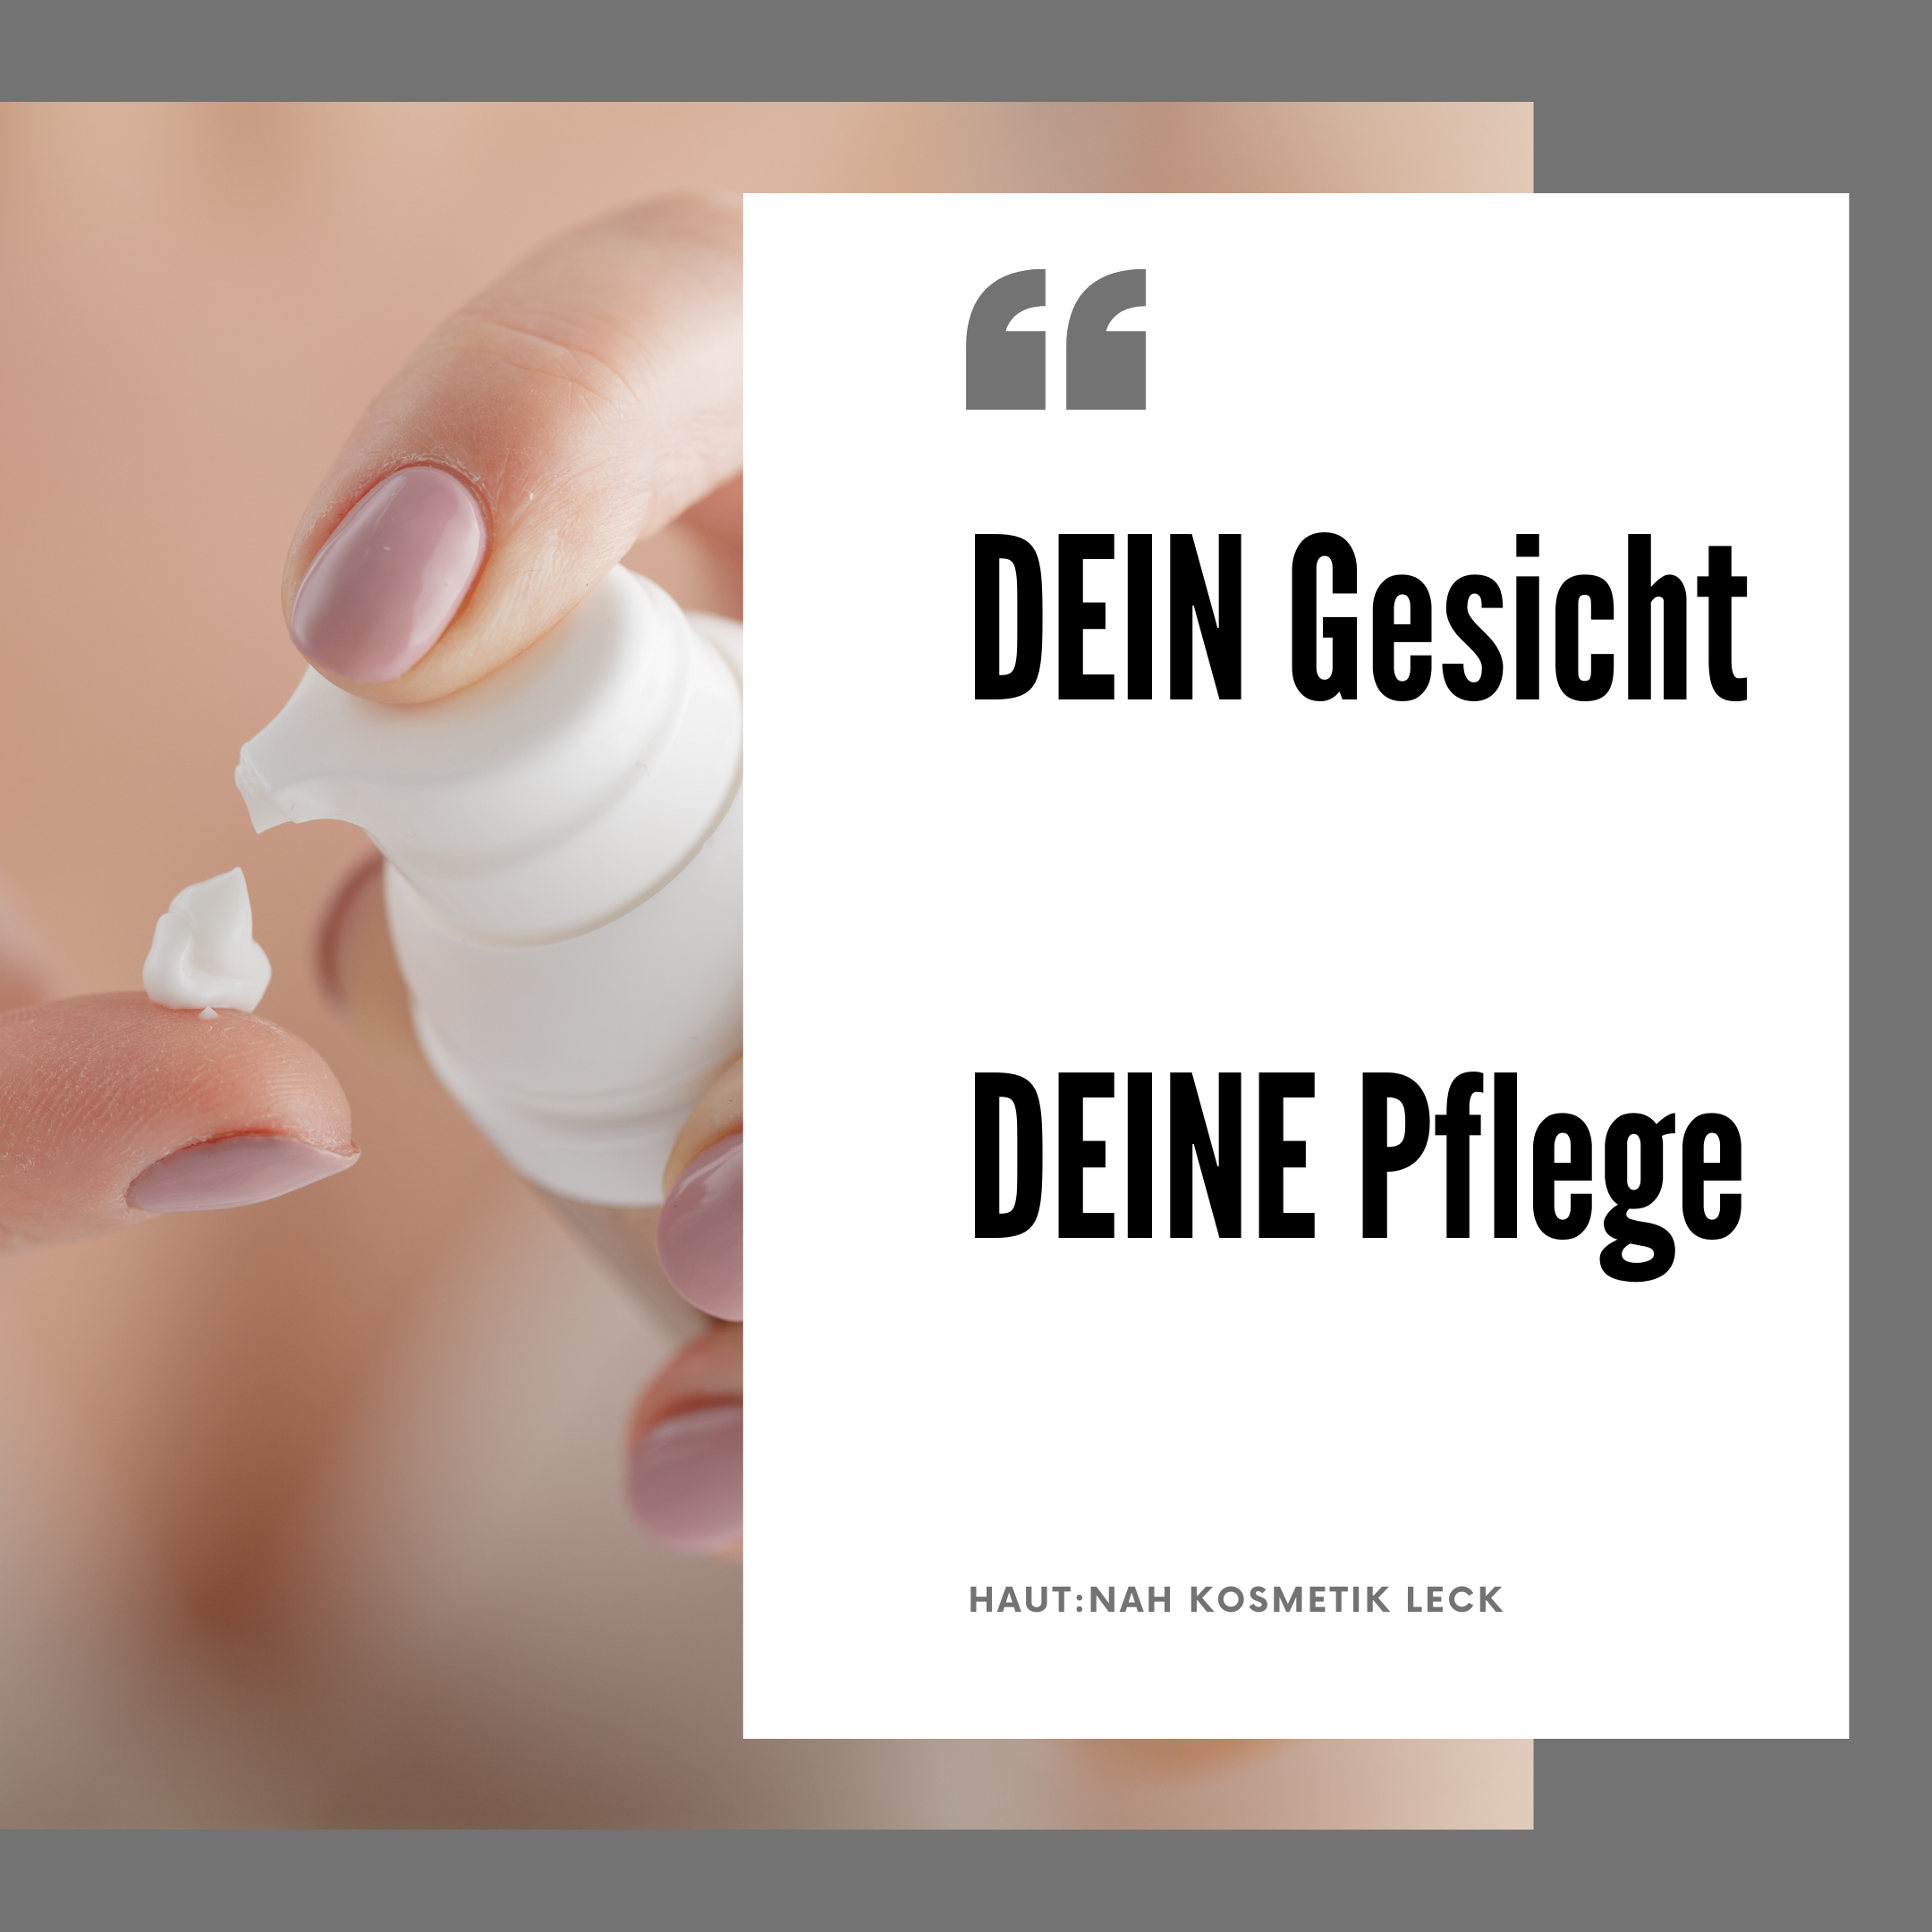 Featured image for “DEIN Gesicht – DEINE Pflege!”